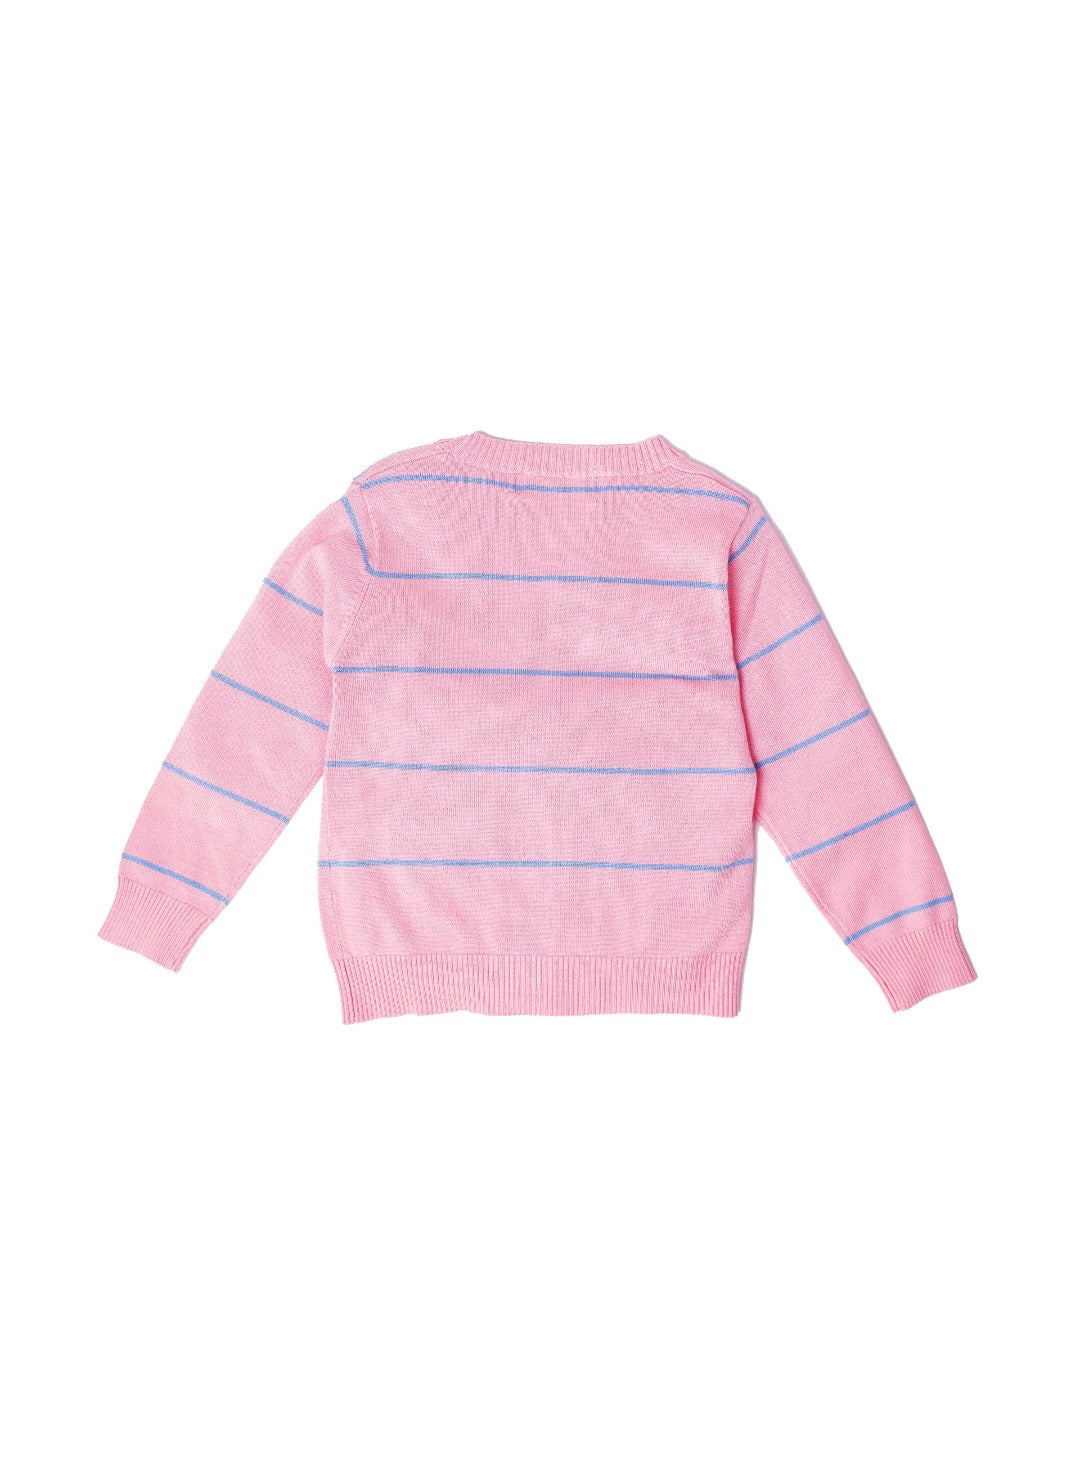 bubblegum pink cardigan with powder blue stripes